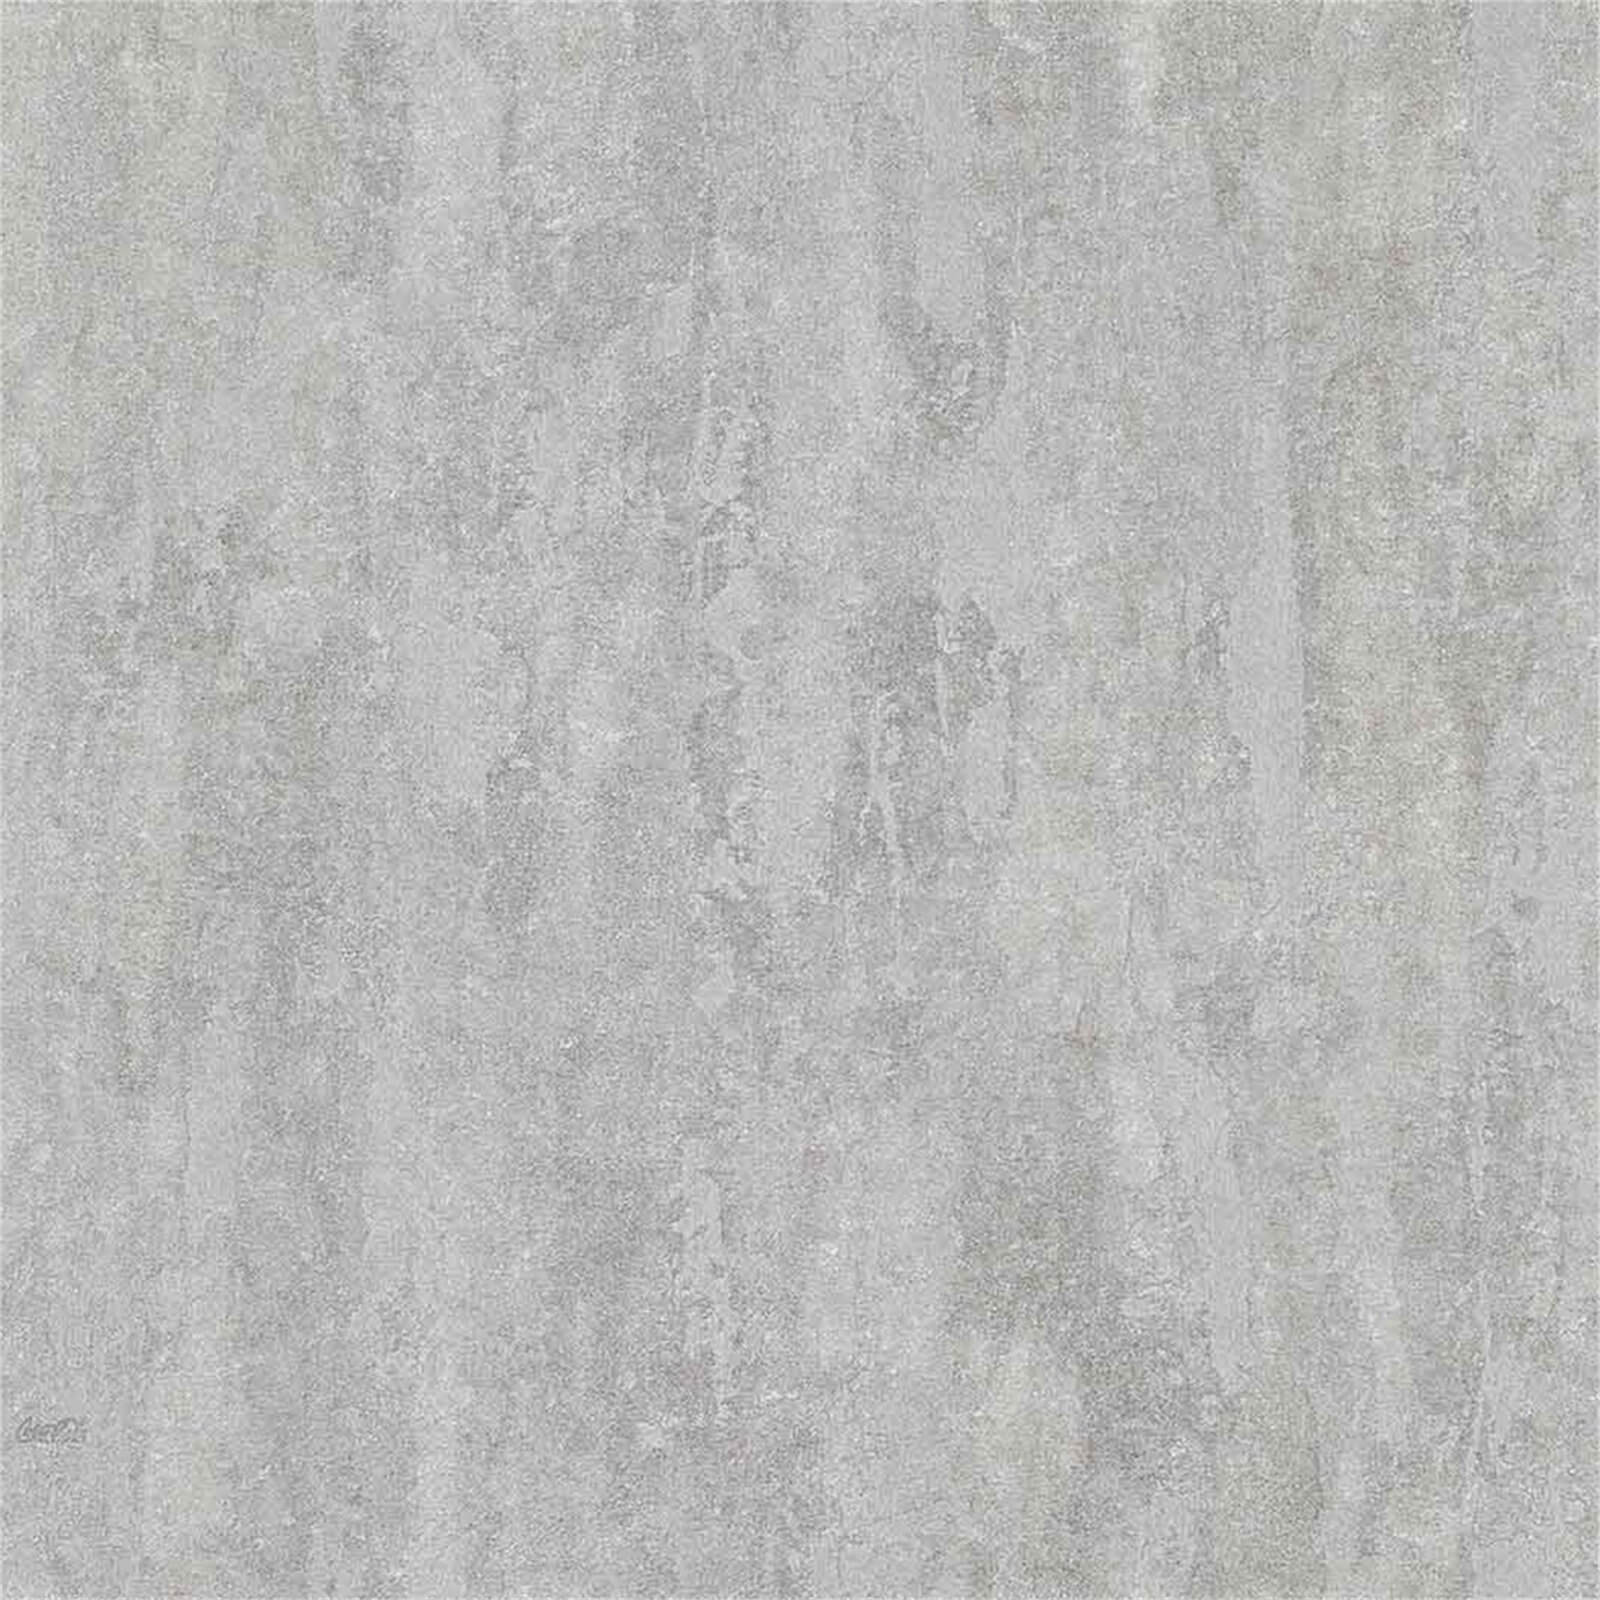 Belgravia Decor Coca Cola Plain Embossed Metallic Pale Silver Wallpaper